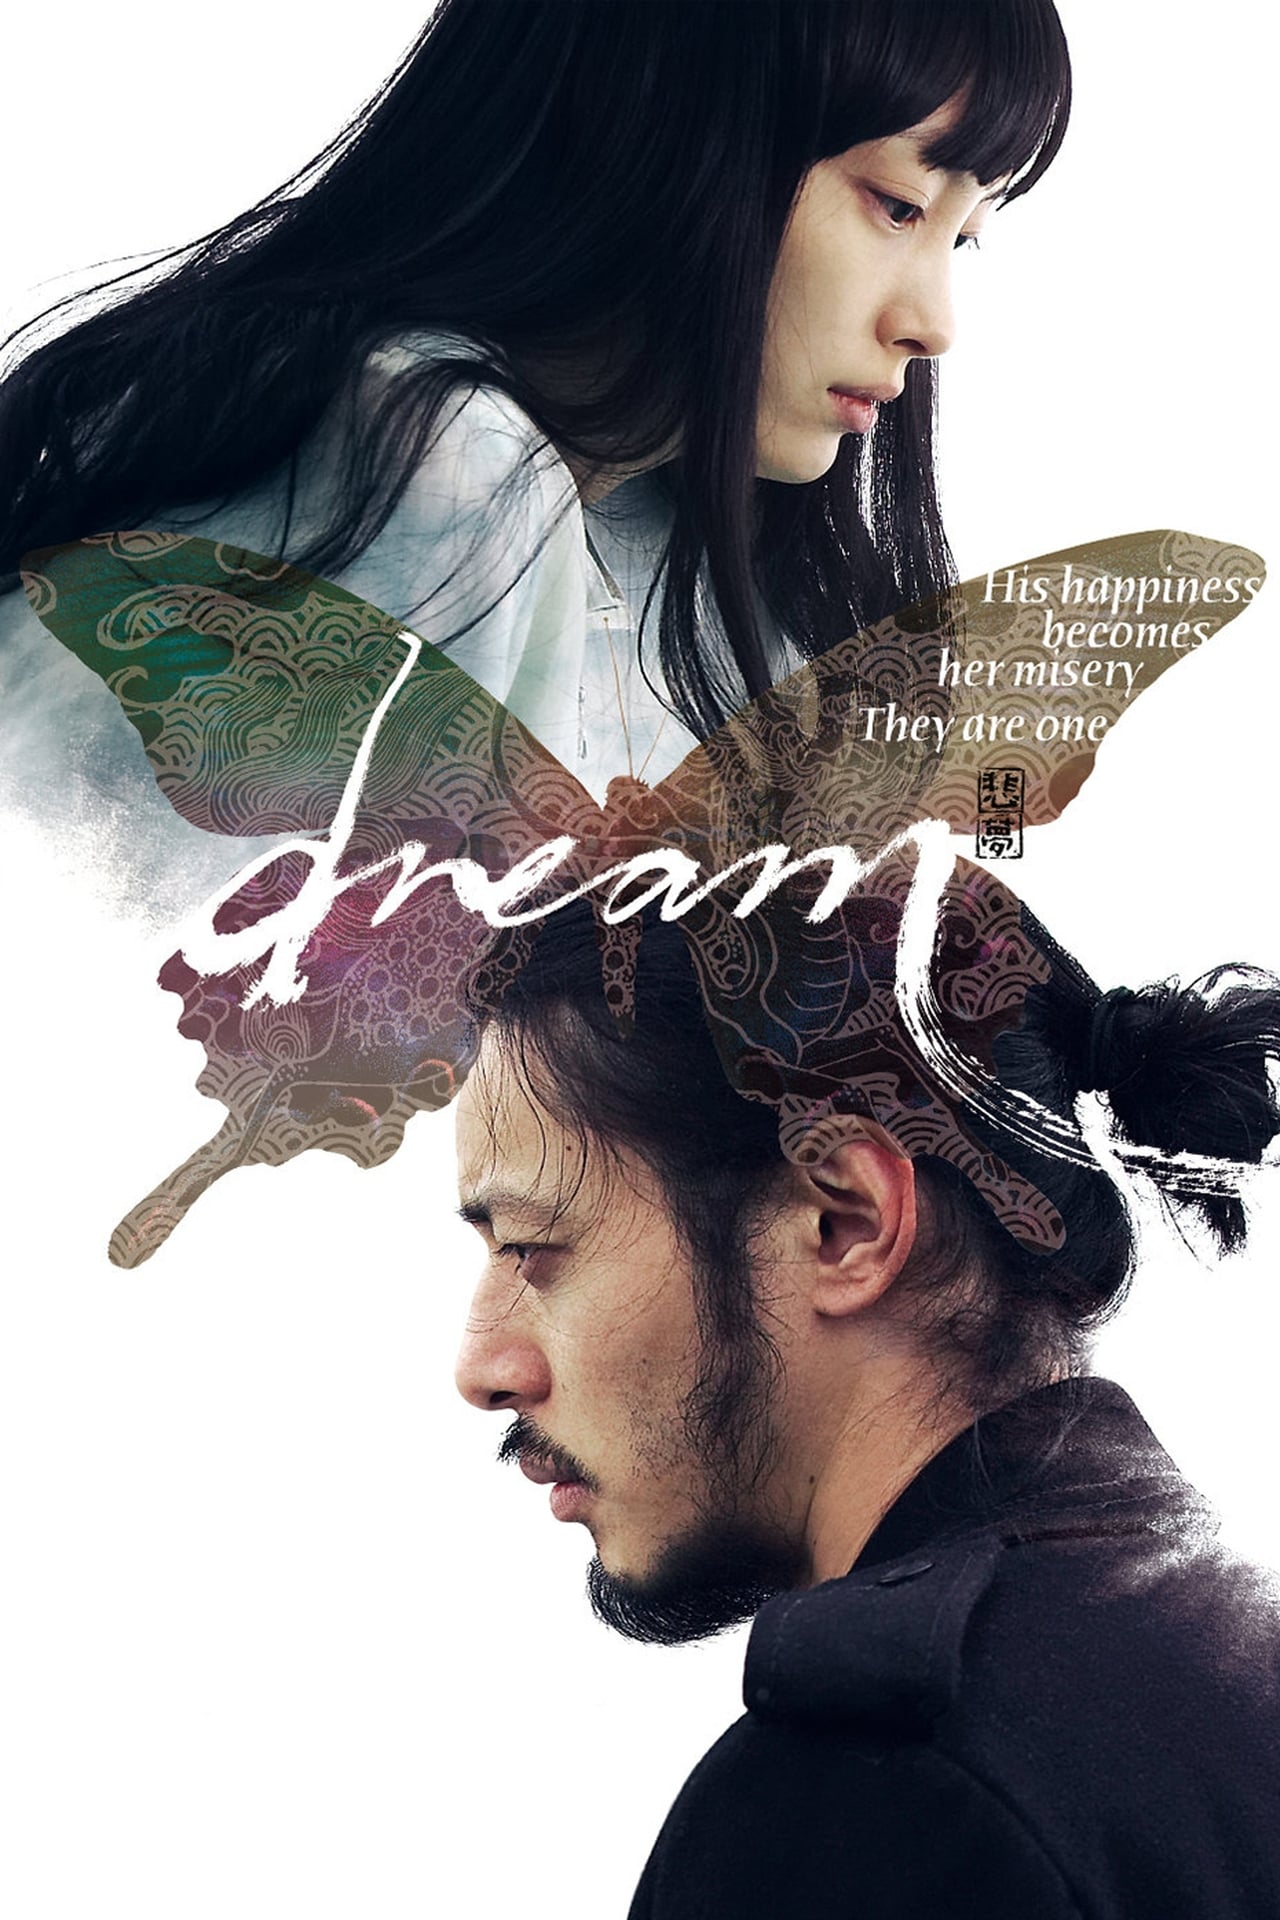 Dream (2008)